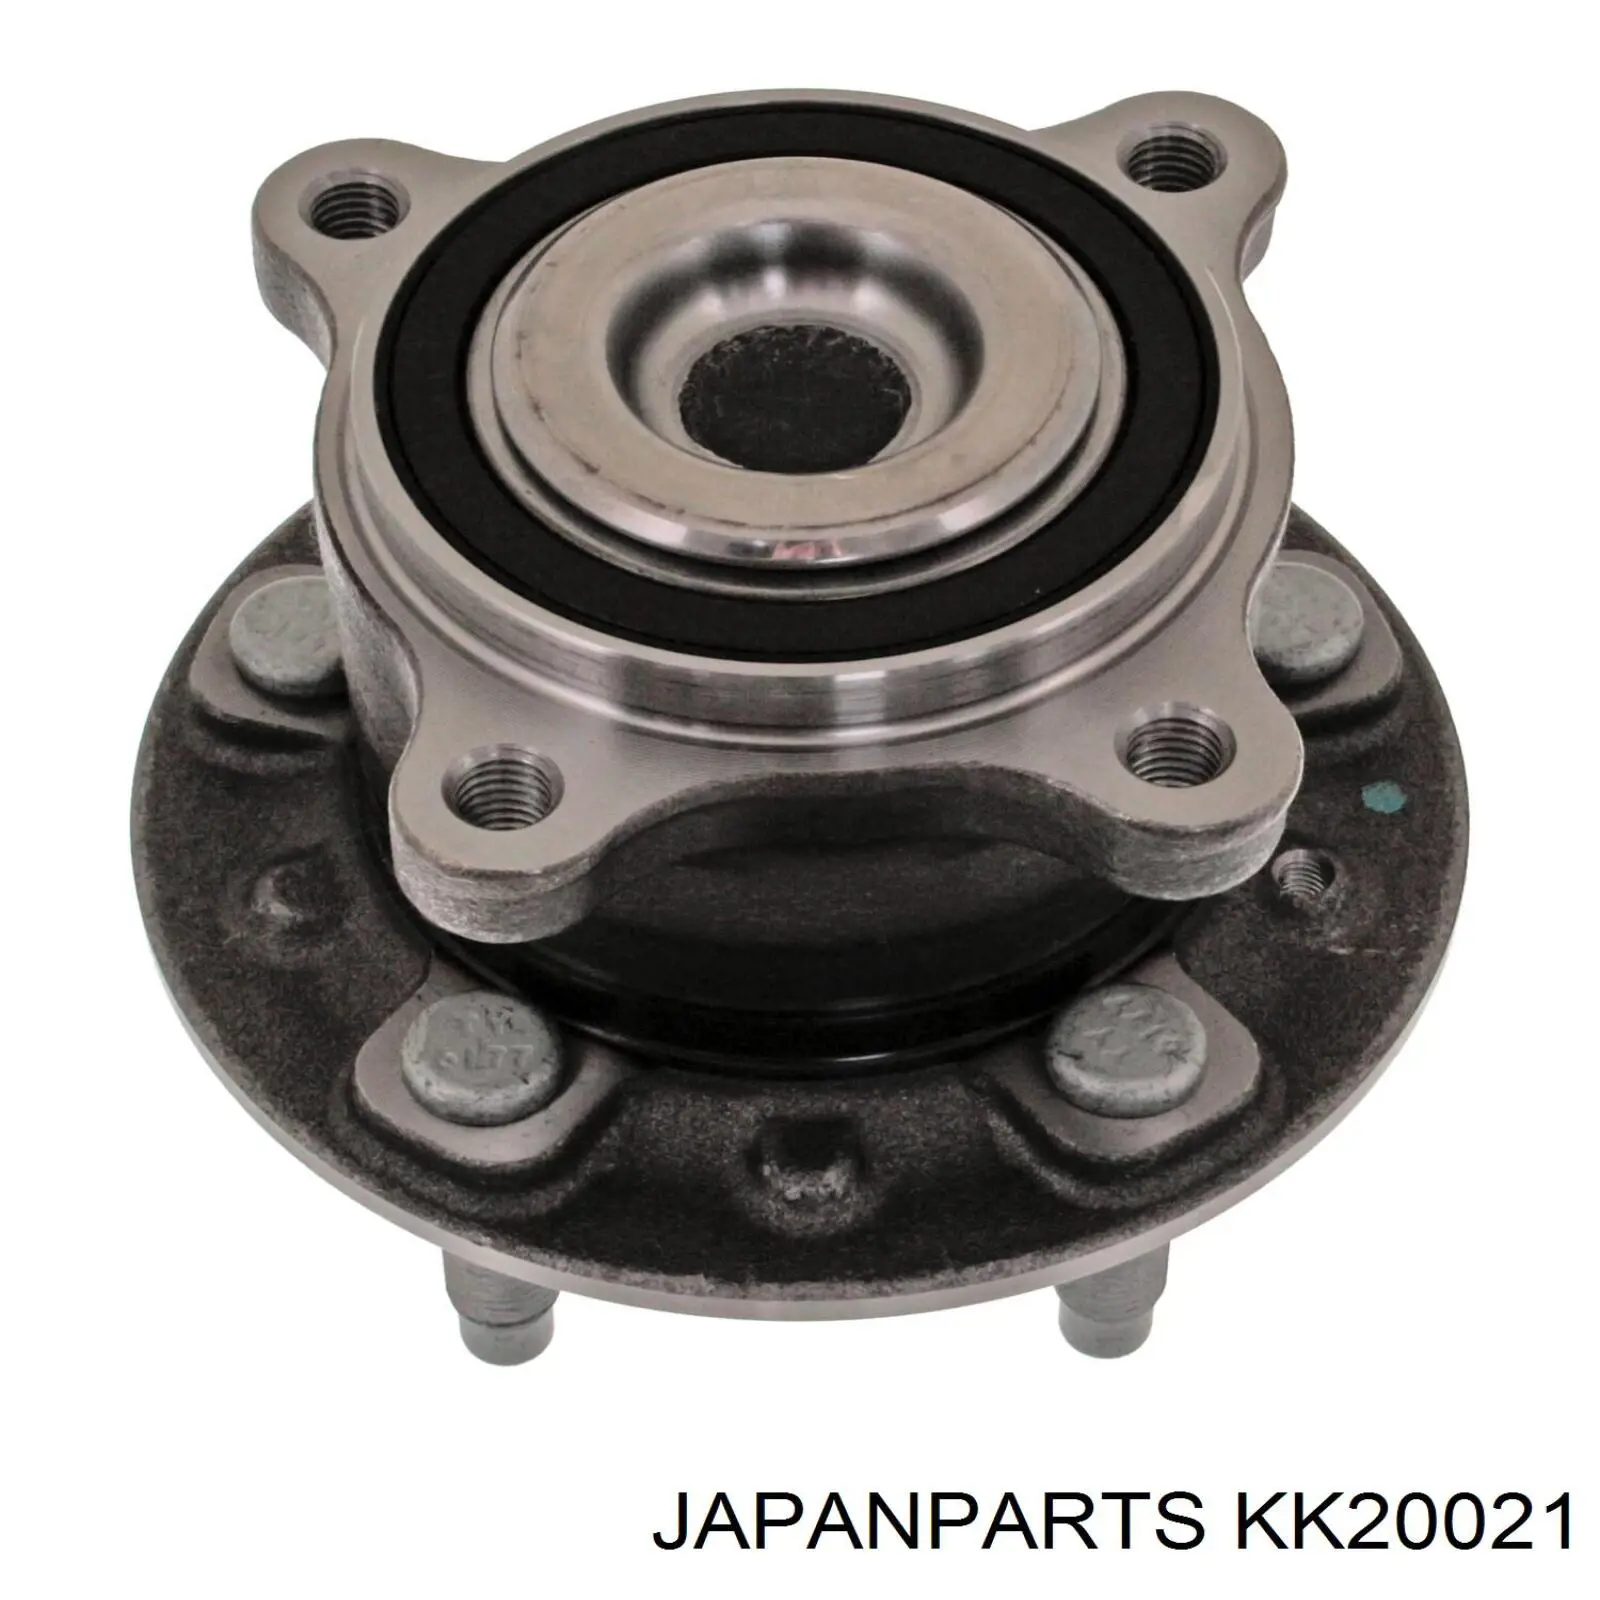 KK20021 Japan Parts ступица задняя